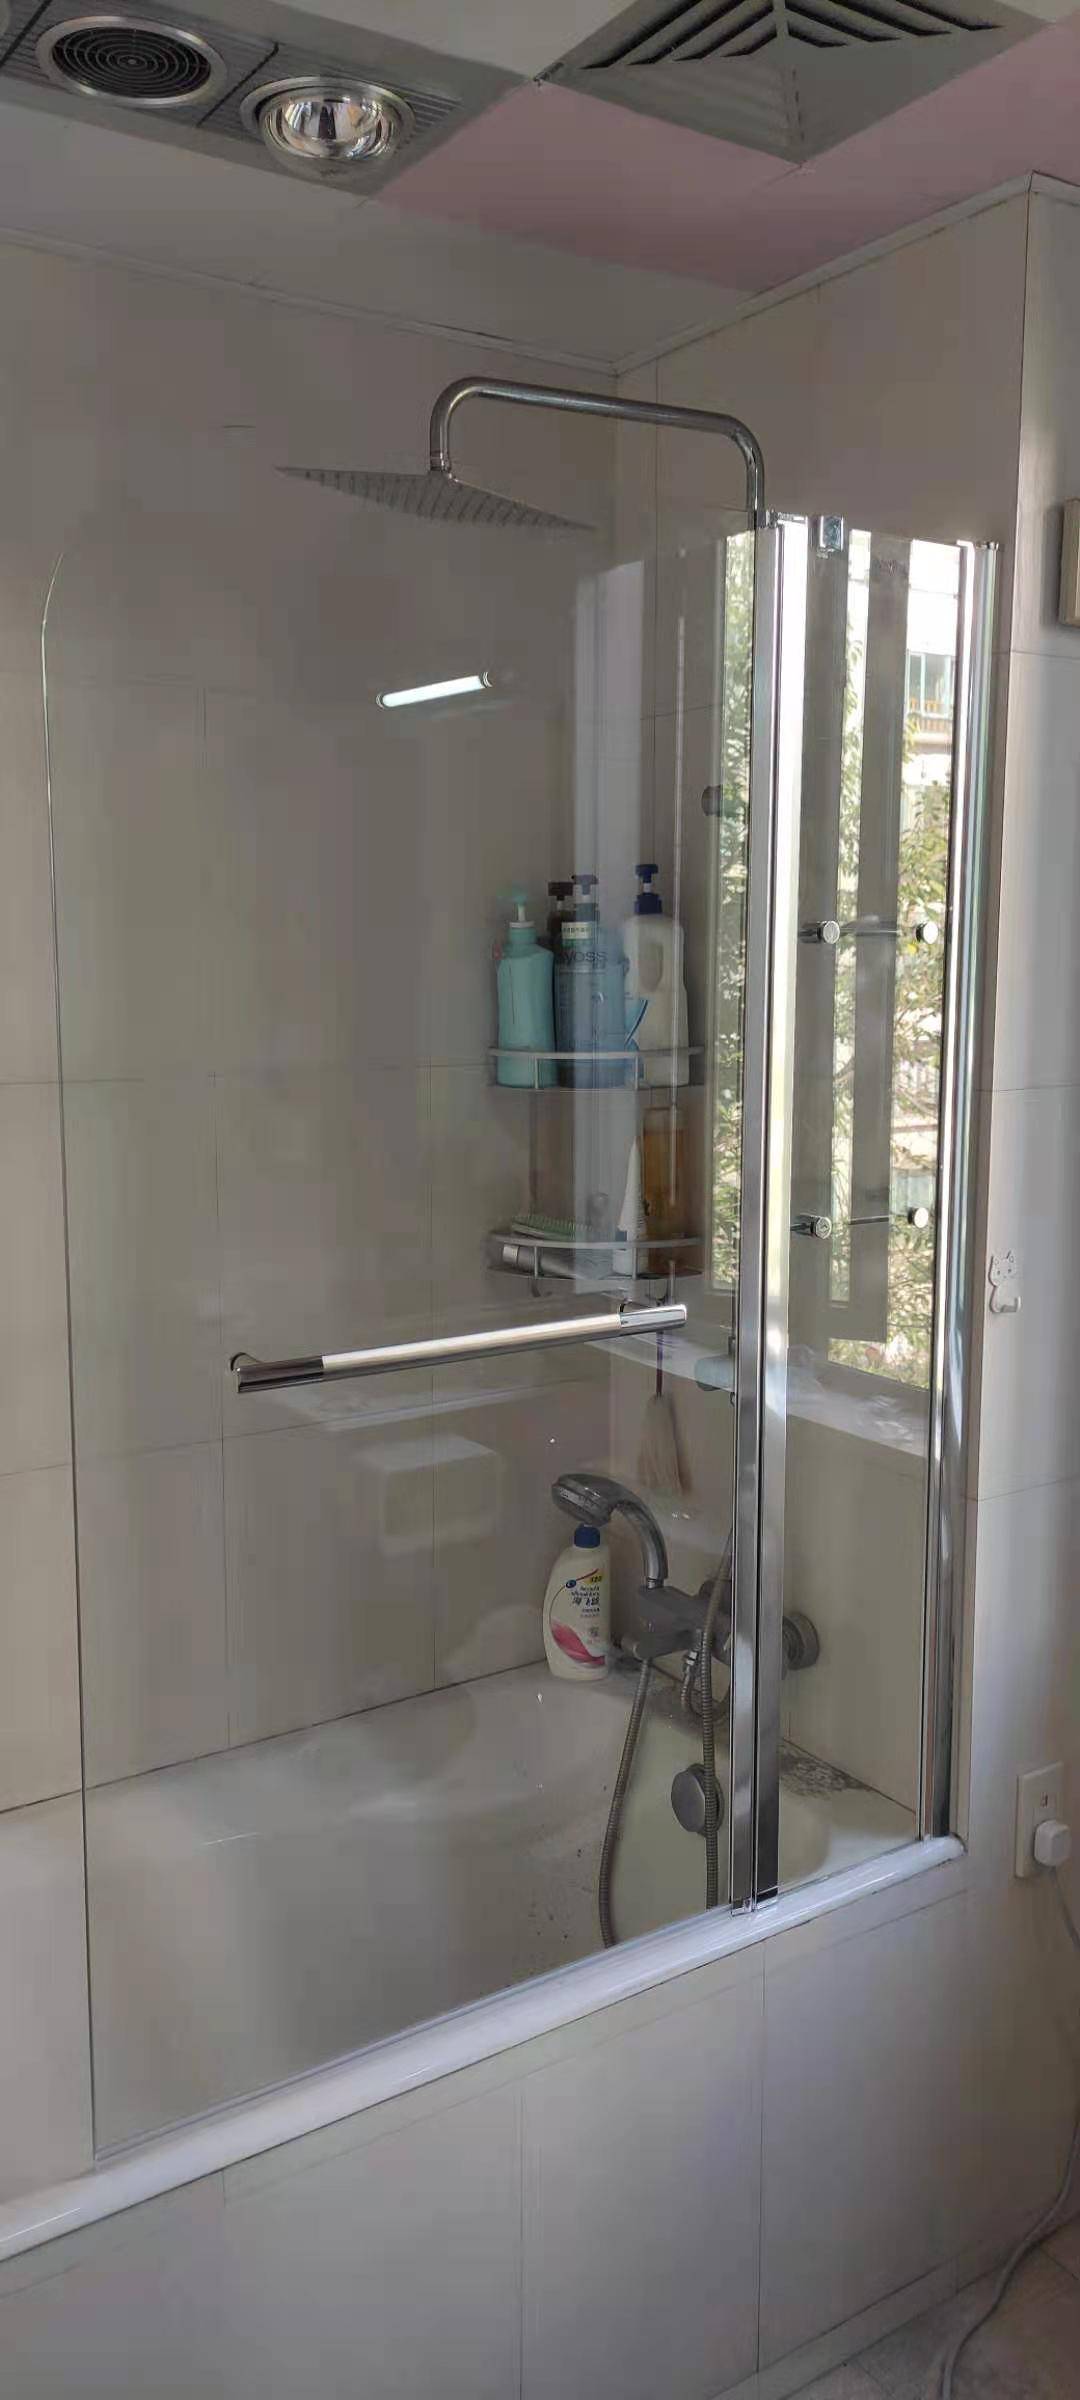 新款宁波两扇折叠收纳置物架浴缸挡水屏风钢化玻璃隔断淋浴屏风